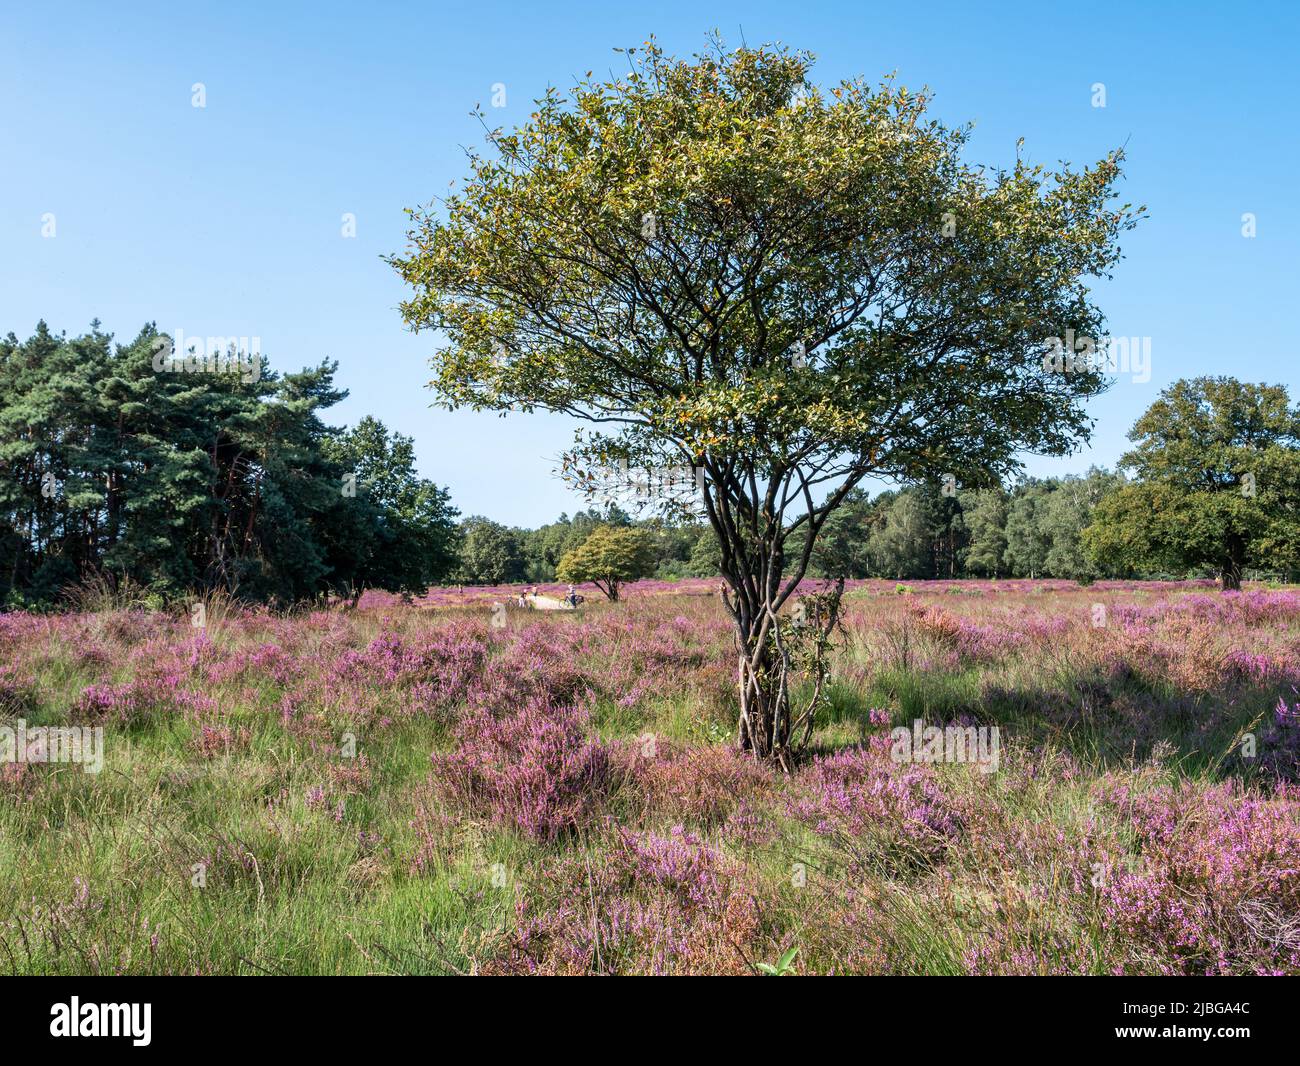 Juneberry, Amelanchier lamarkii, árbol y brezo en flor, Zuiderheide, Gooi, Países Bajos Foto de stock